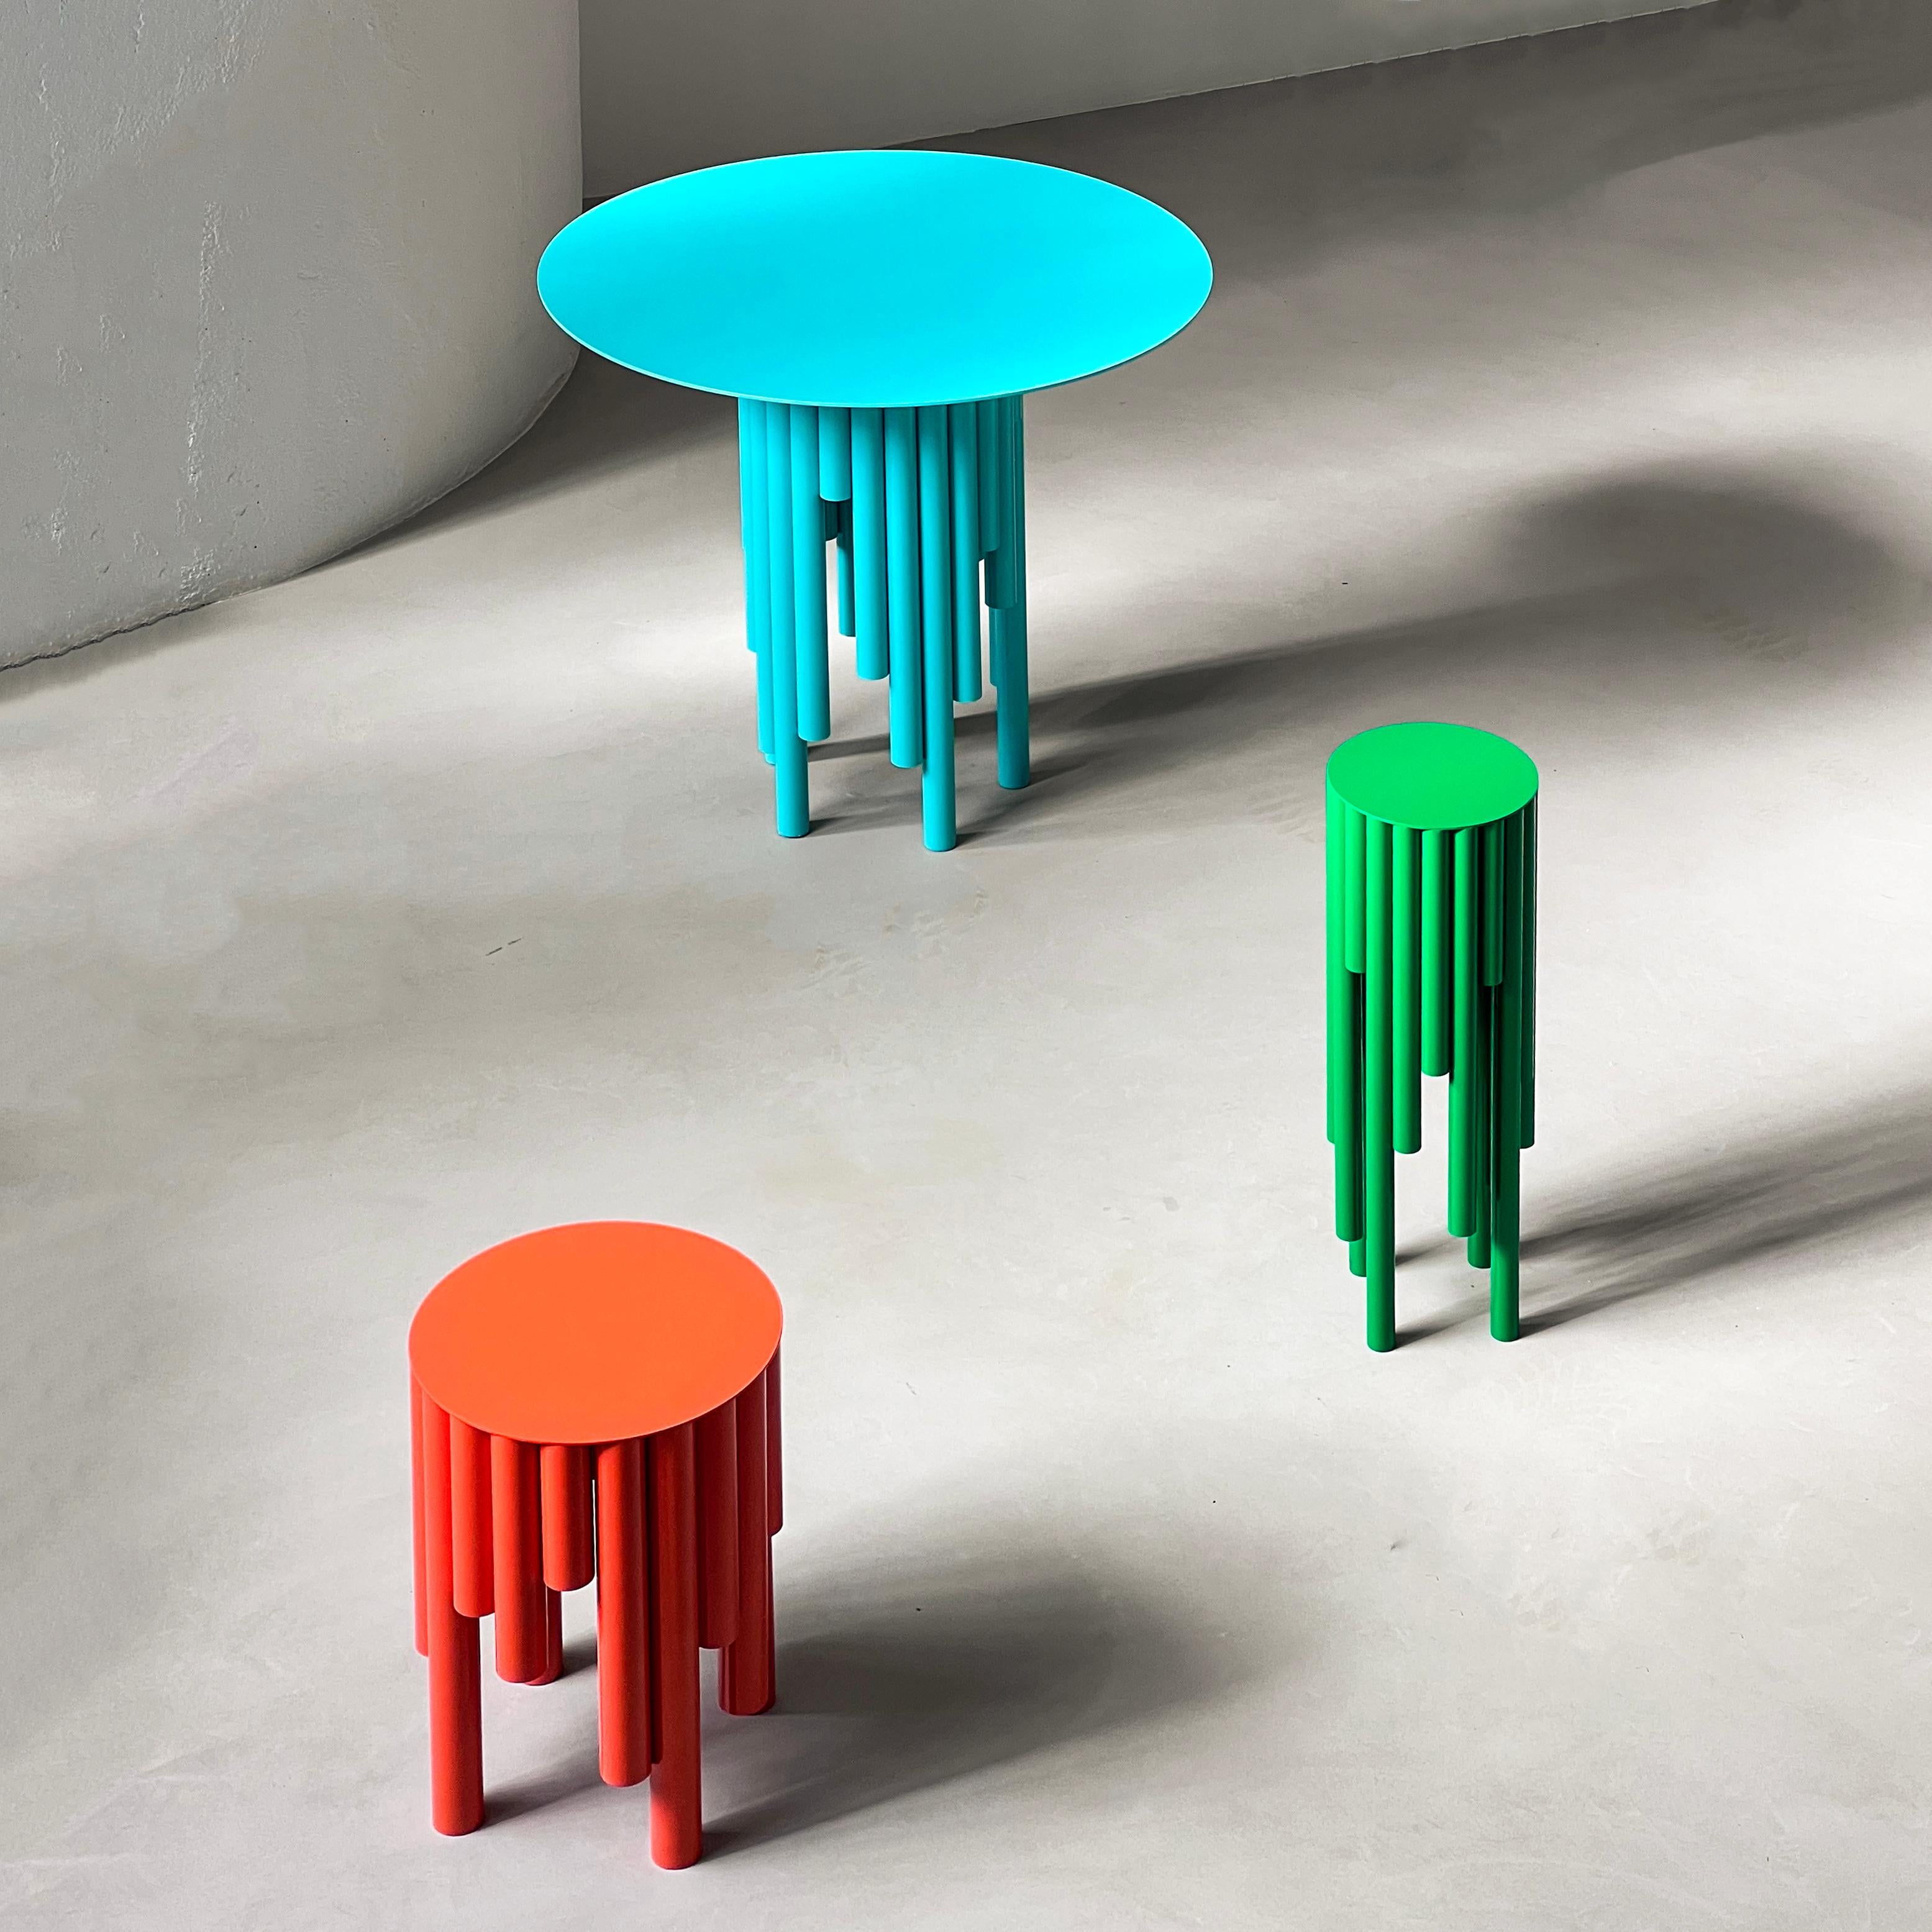 Architektonischer Esstisch - Skulpturaler runder Tisch - Zeitgenössischer Collectible Tisch

Dieser Beistelltisch wurde anlässlich der Milano Design Week 2024 vorgestellt und ist Teil der neuesten Kollektion von Spinzi, Circus. Die von der Klassik